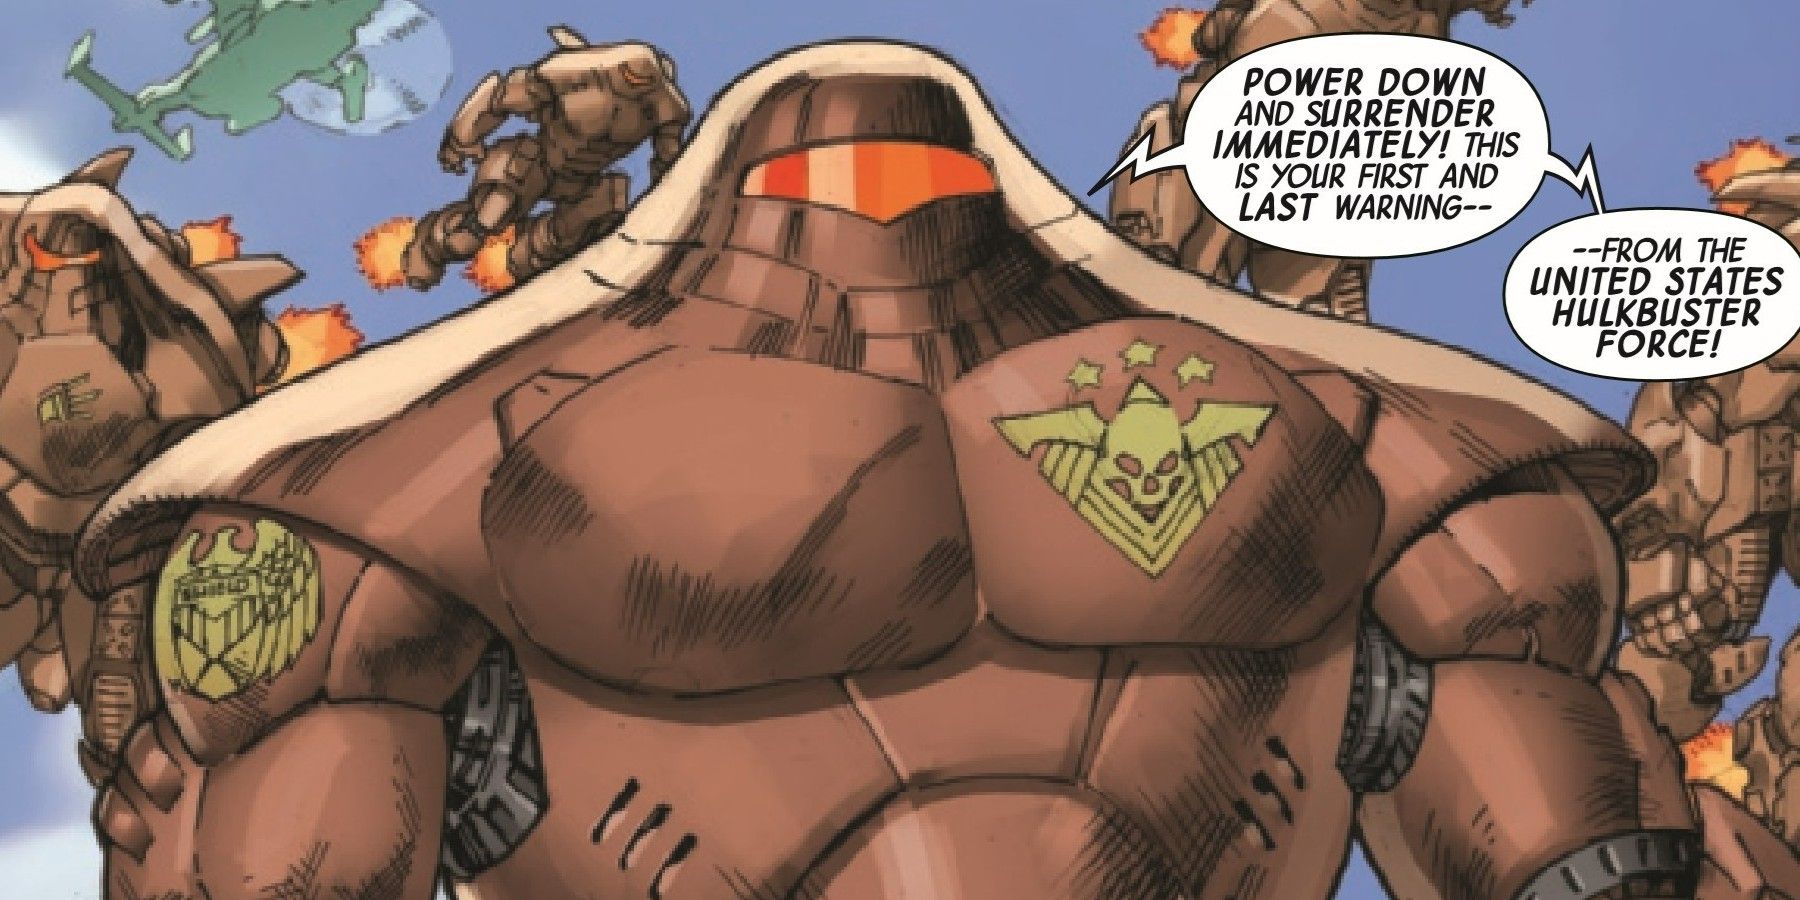 The Hulkbusters Return in Gamma Flight #2